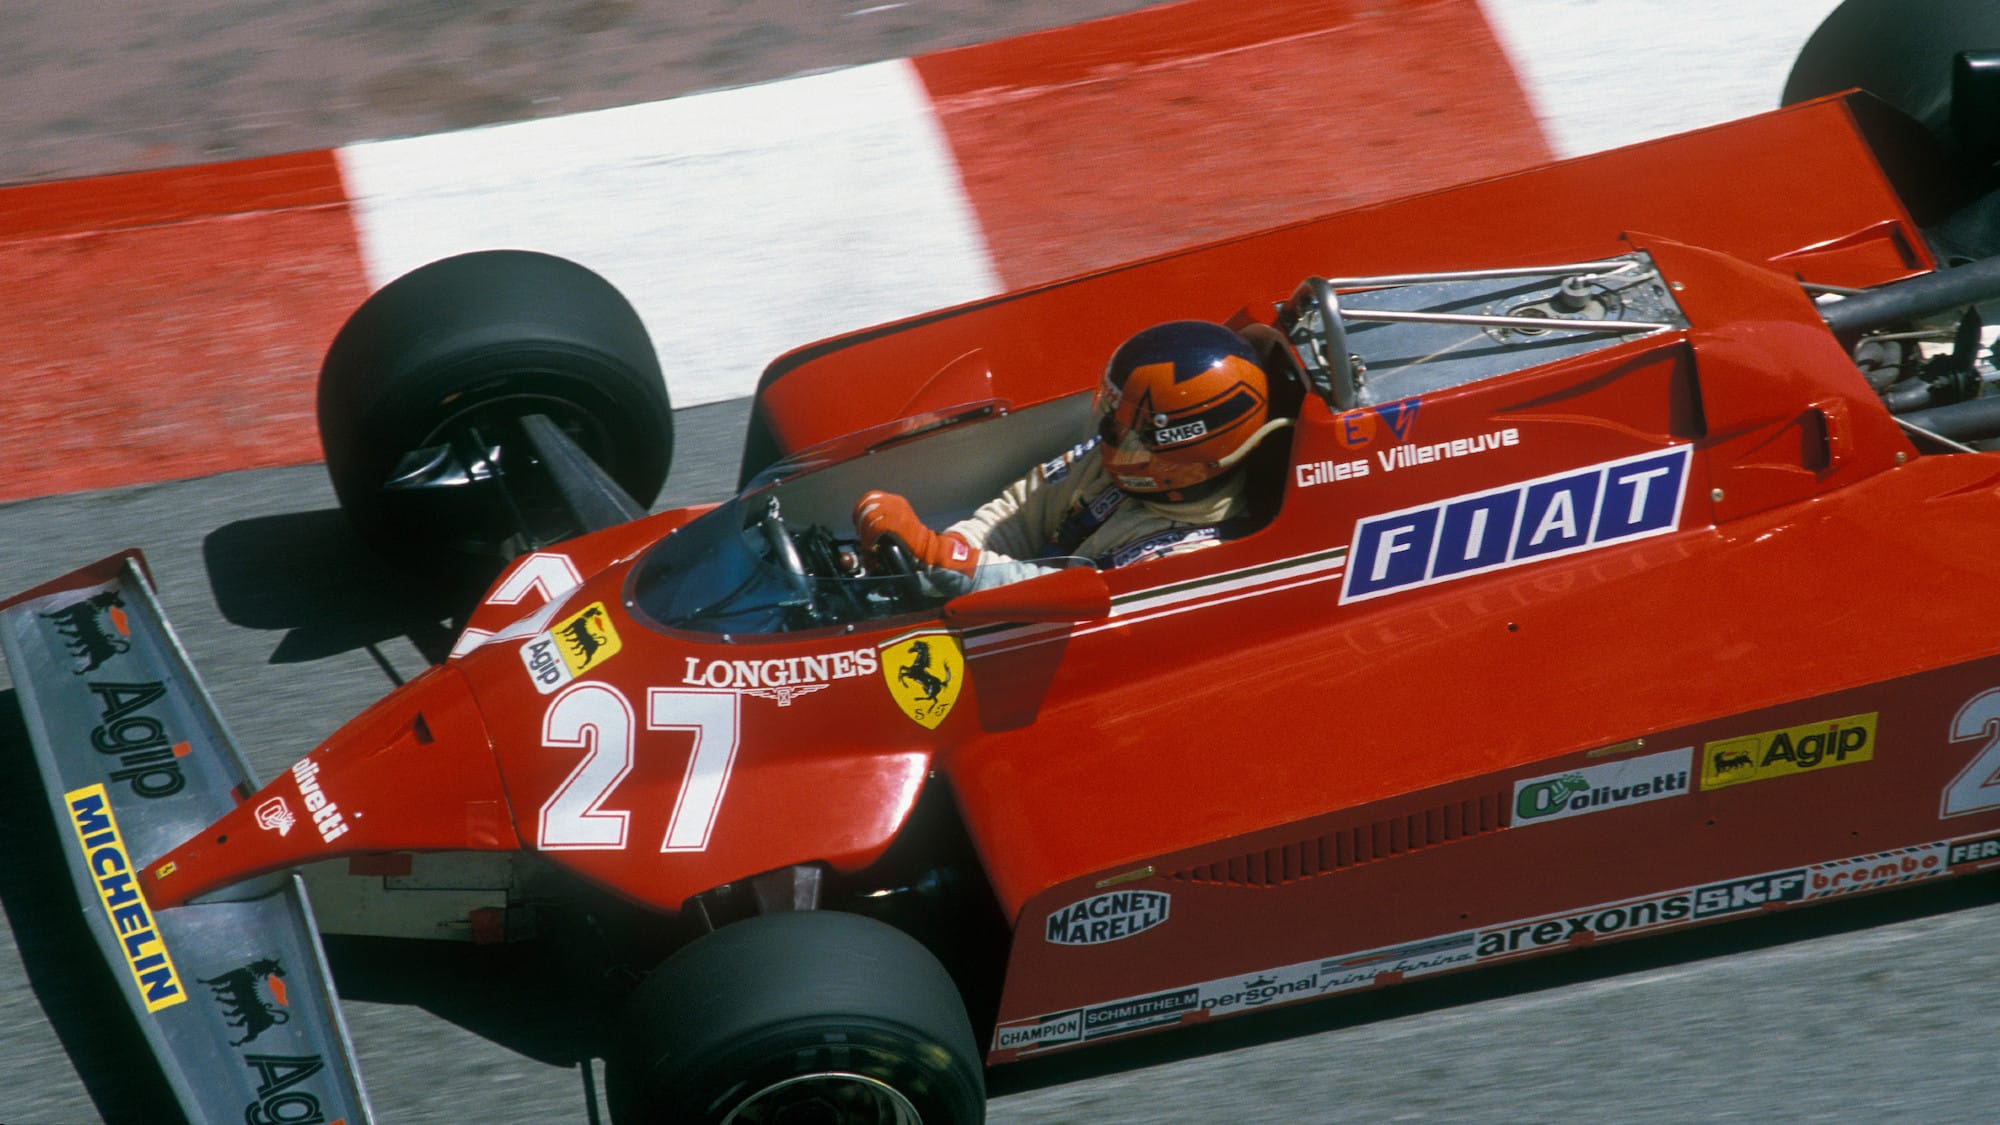 F1 Monaco GP 1982 retrospective: Remembering F1's craziest finish